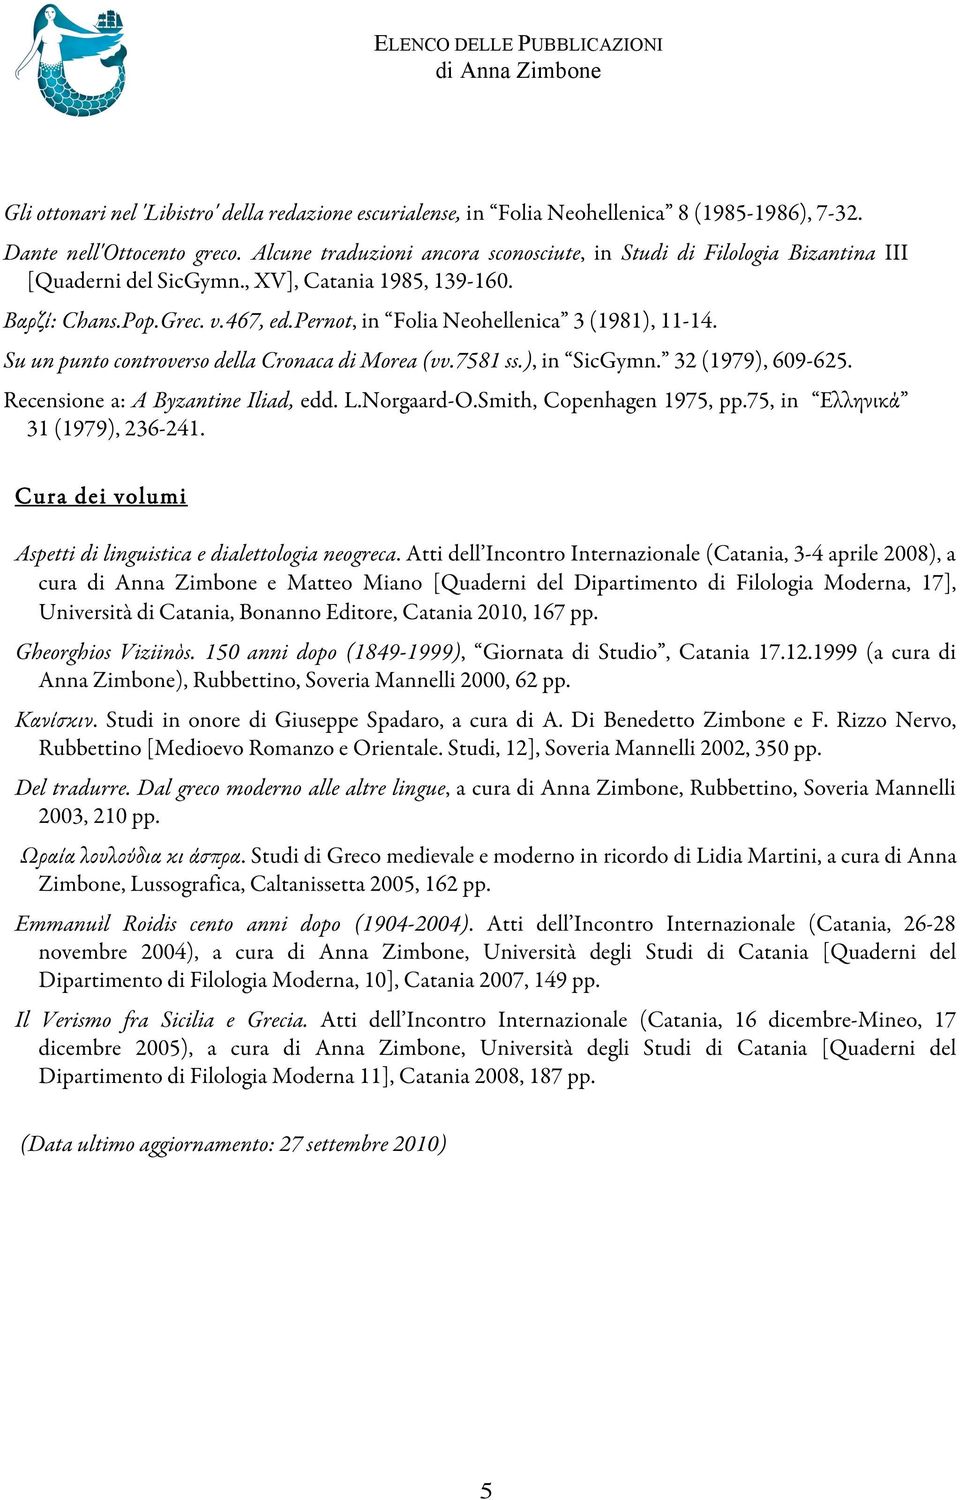 pernot, in Folia Neohellenica 3 (1981), 11-14. Su un punto controverso della Cronaca di Morea (vv.7581 ss.), in SicGymn. 32 (1979), 609-625. Recensione a: A Byzantine Iliad, edd. L.Norgaard-O.